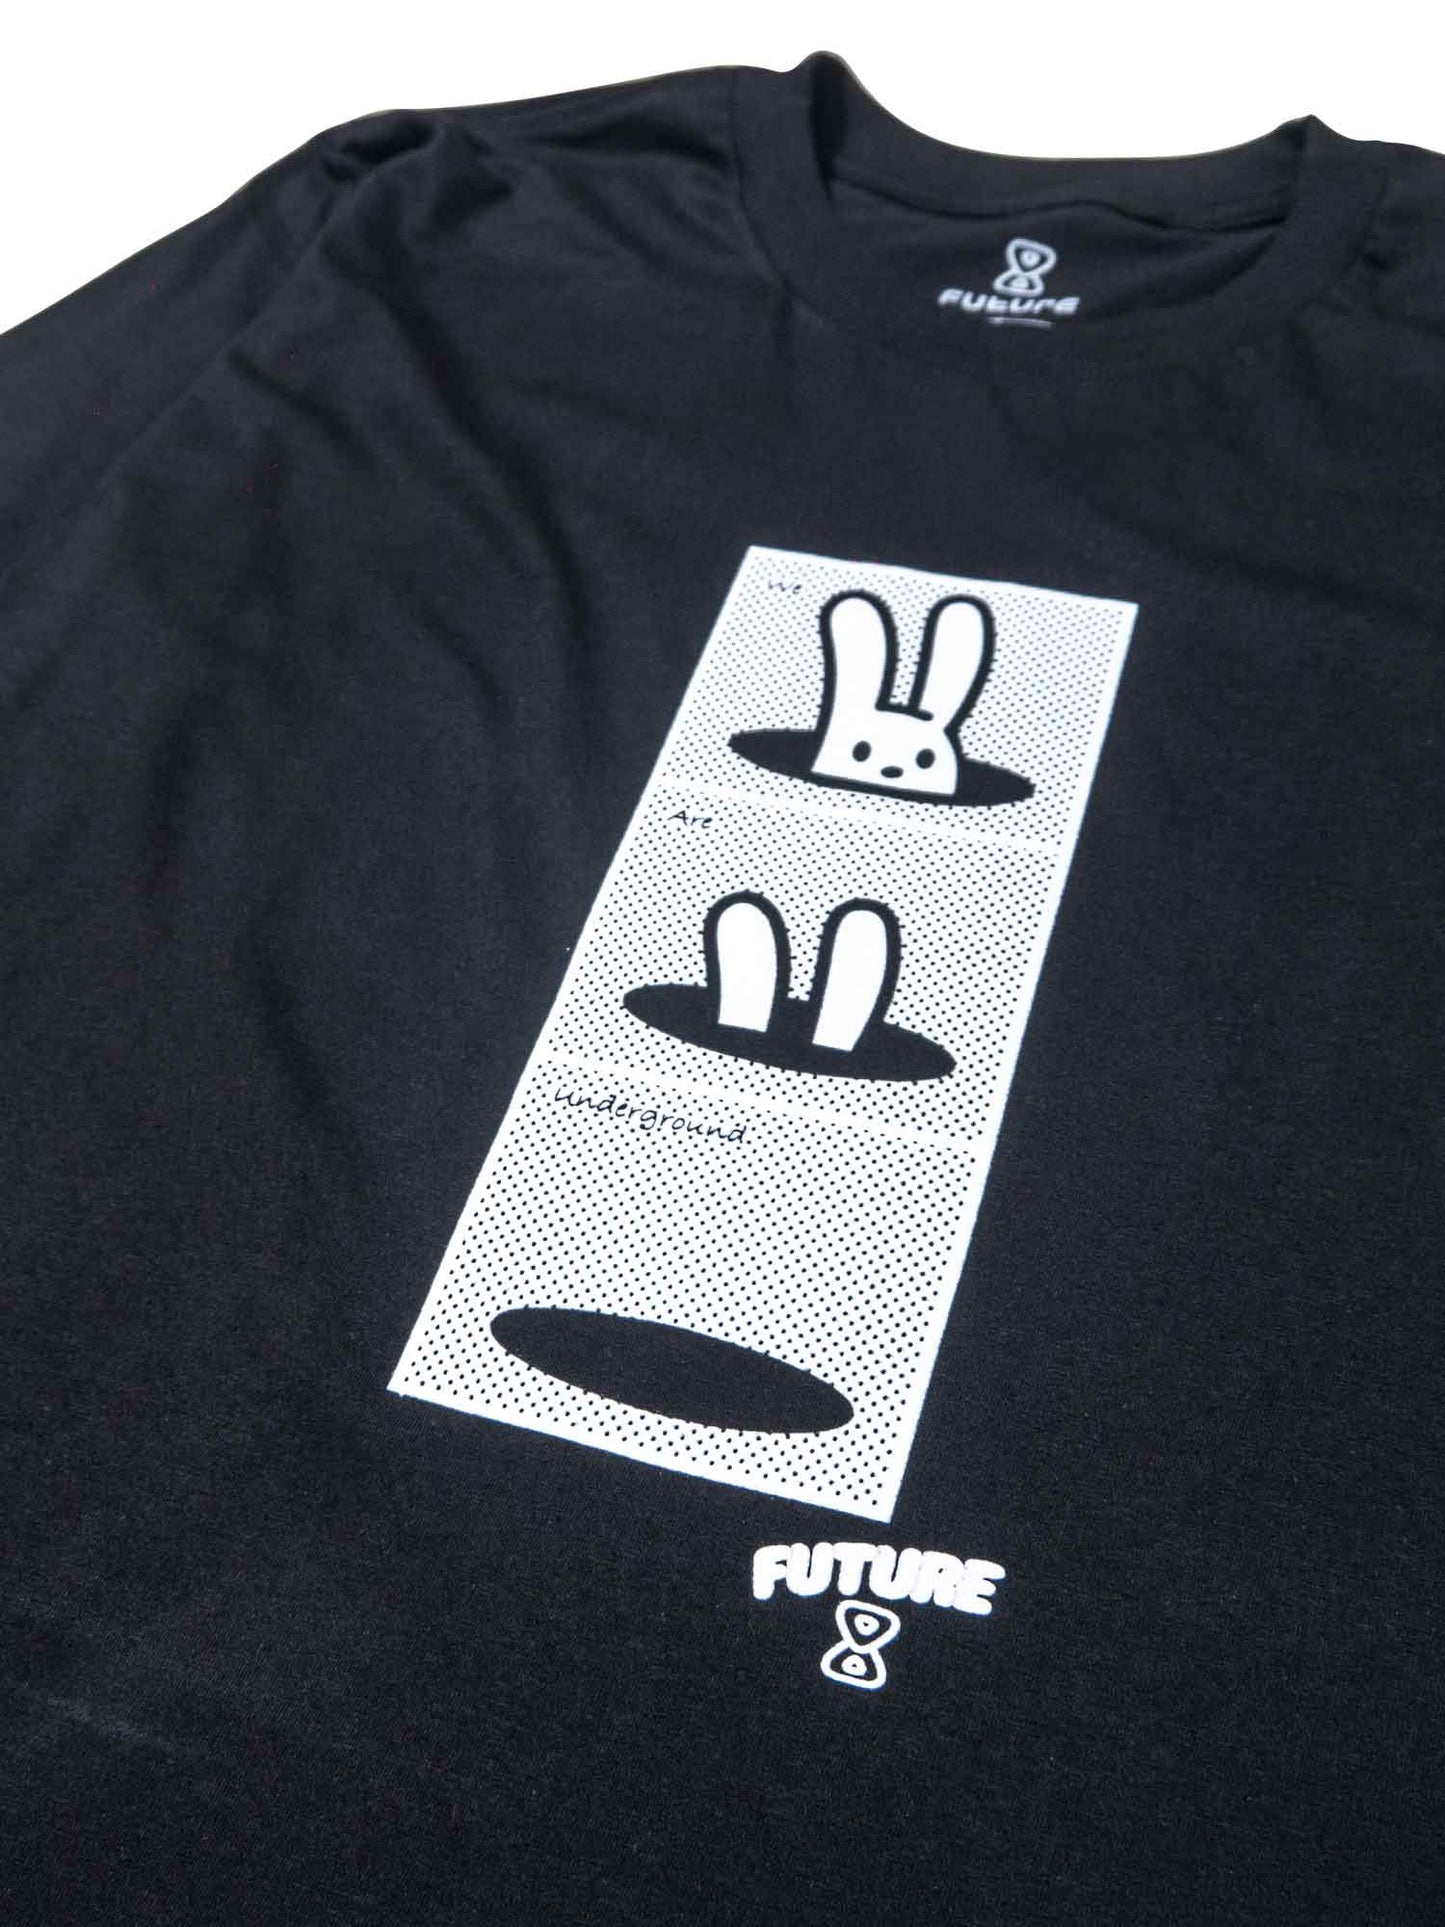     Camiseta-Future-Underground-Preta-Frente-Close